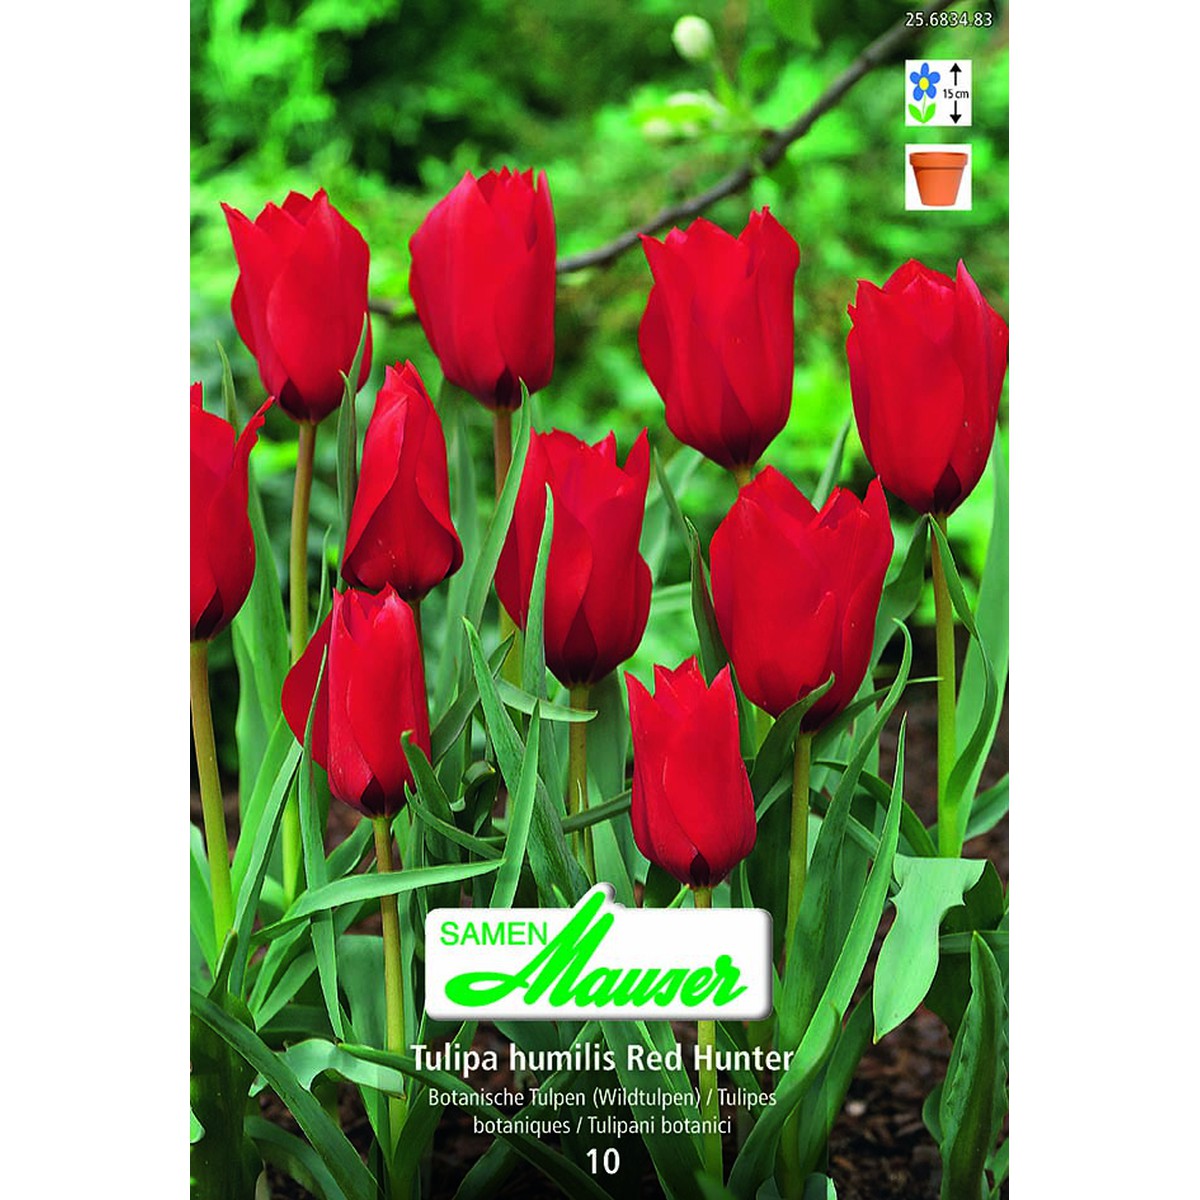   Tulipe botanique hum Red Hunter 10  12/